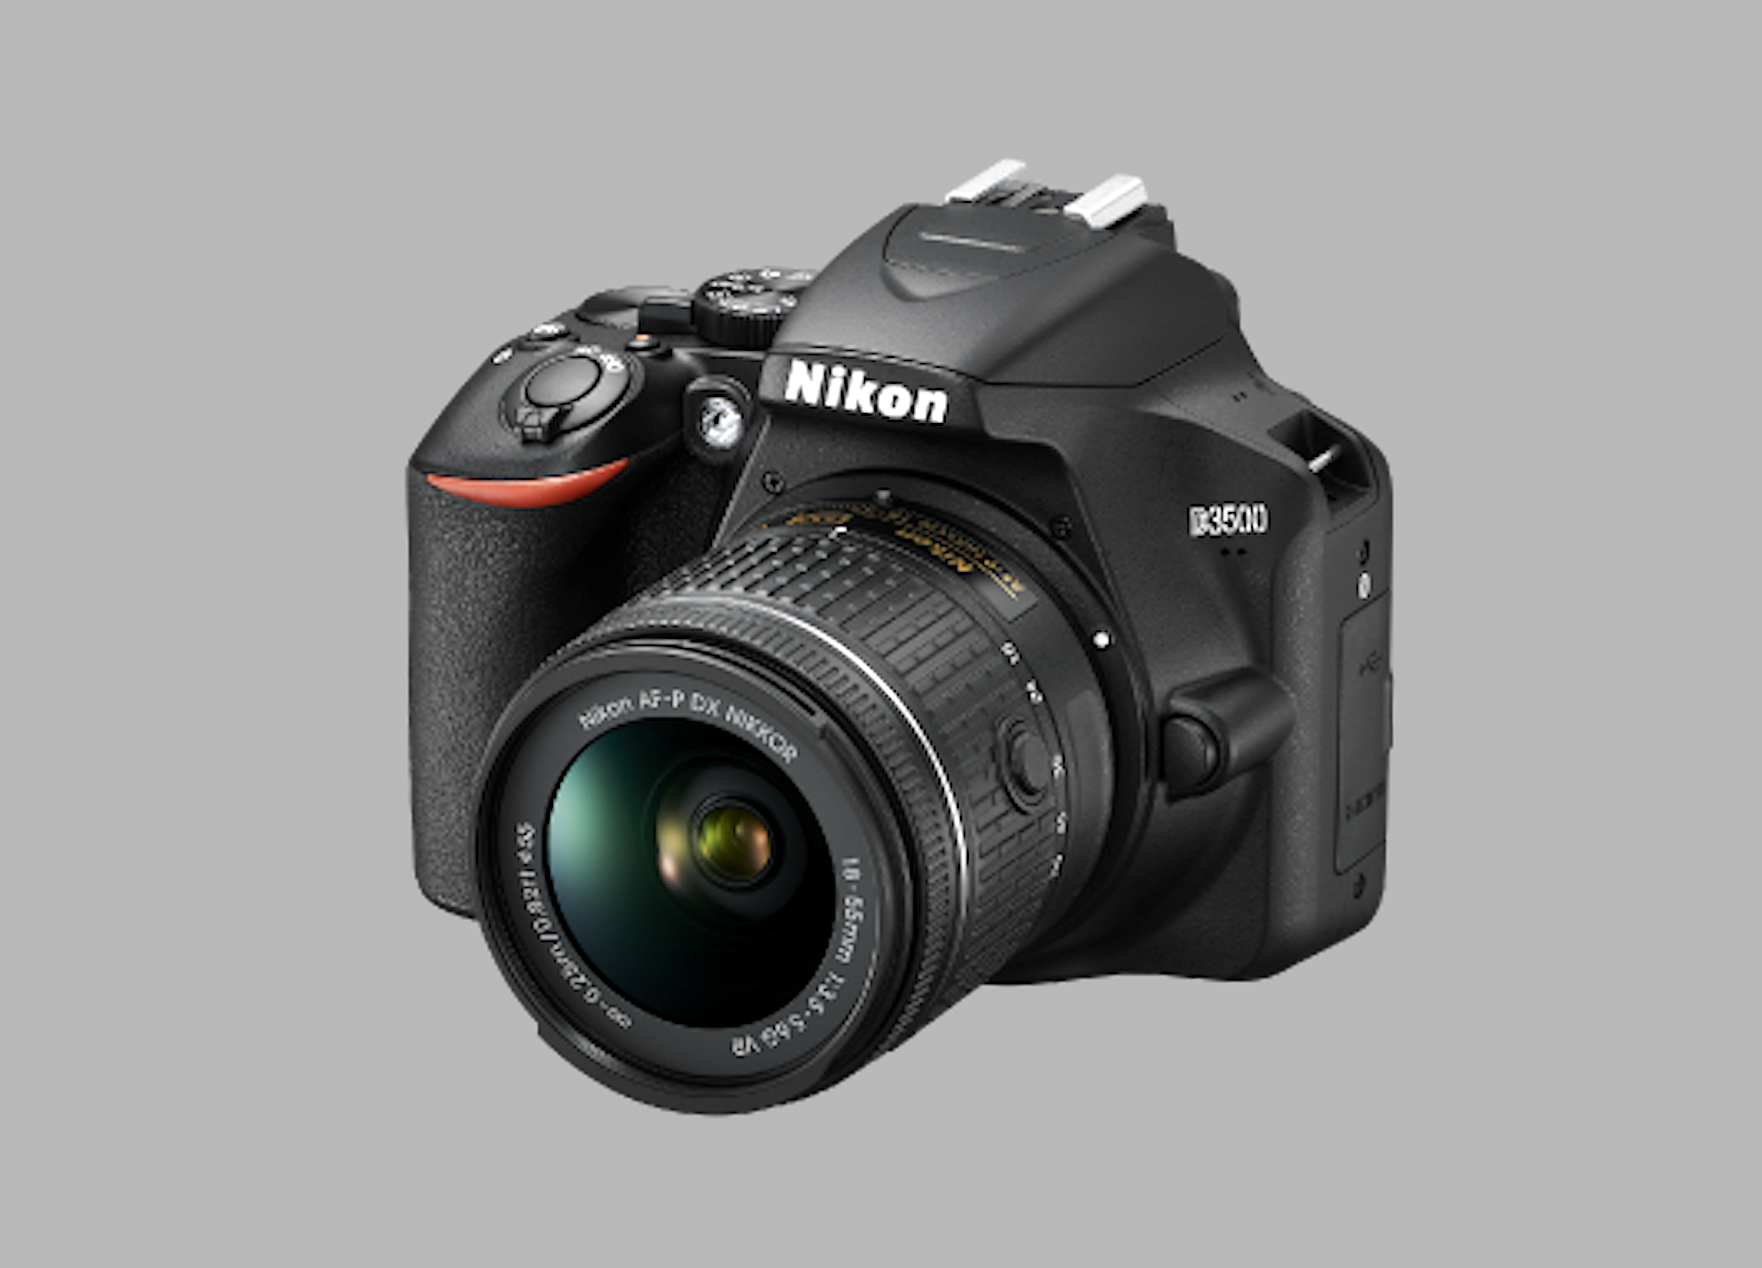 盤點5款高質相機及鏡頭推薦丨大熱品牌如Sony、Canon和Nikon鏡頭最平$1080 可入手